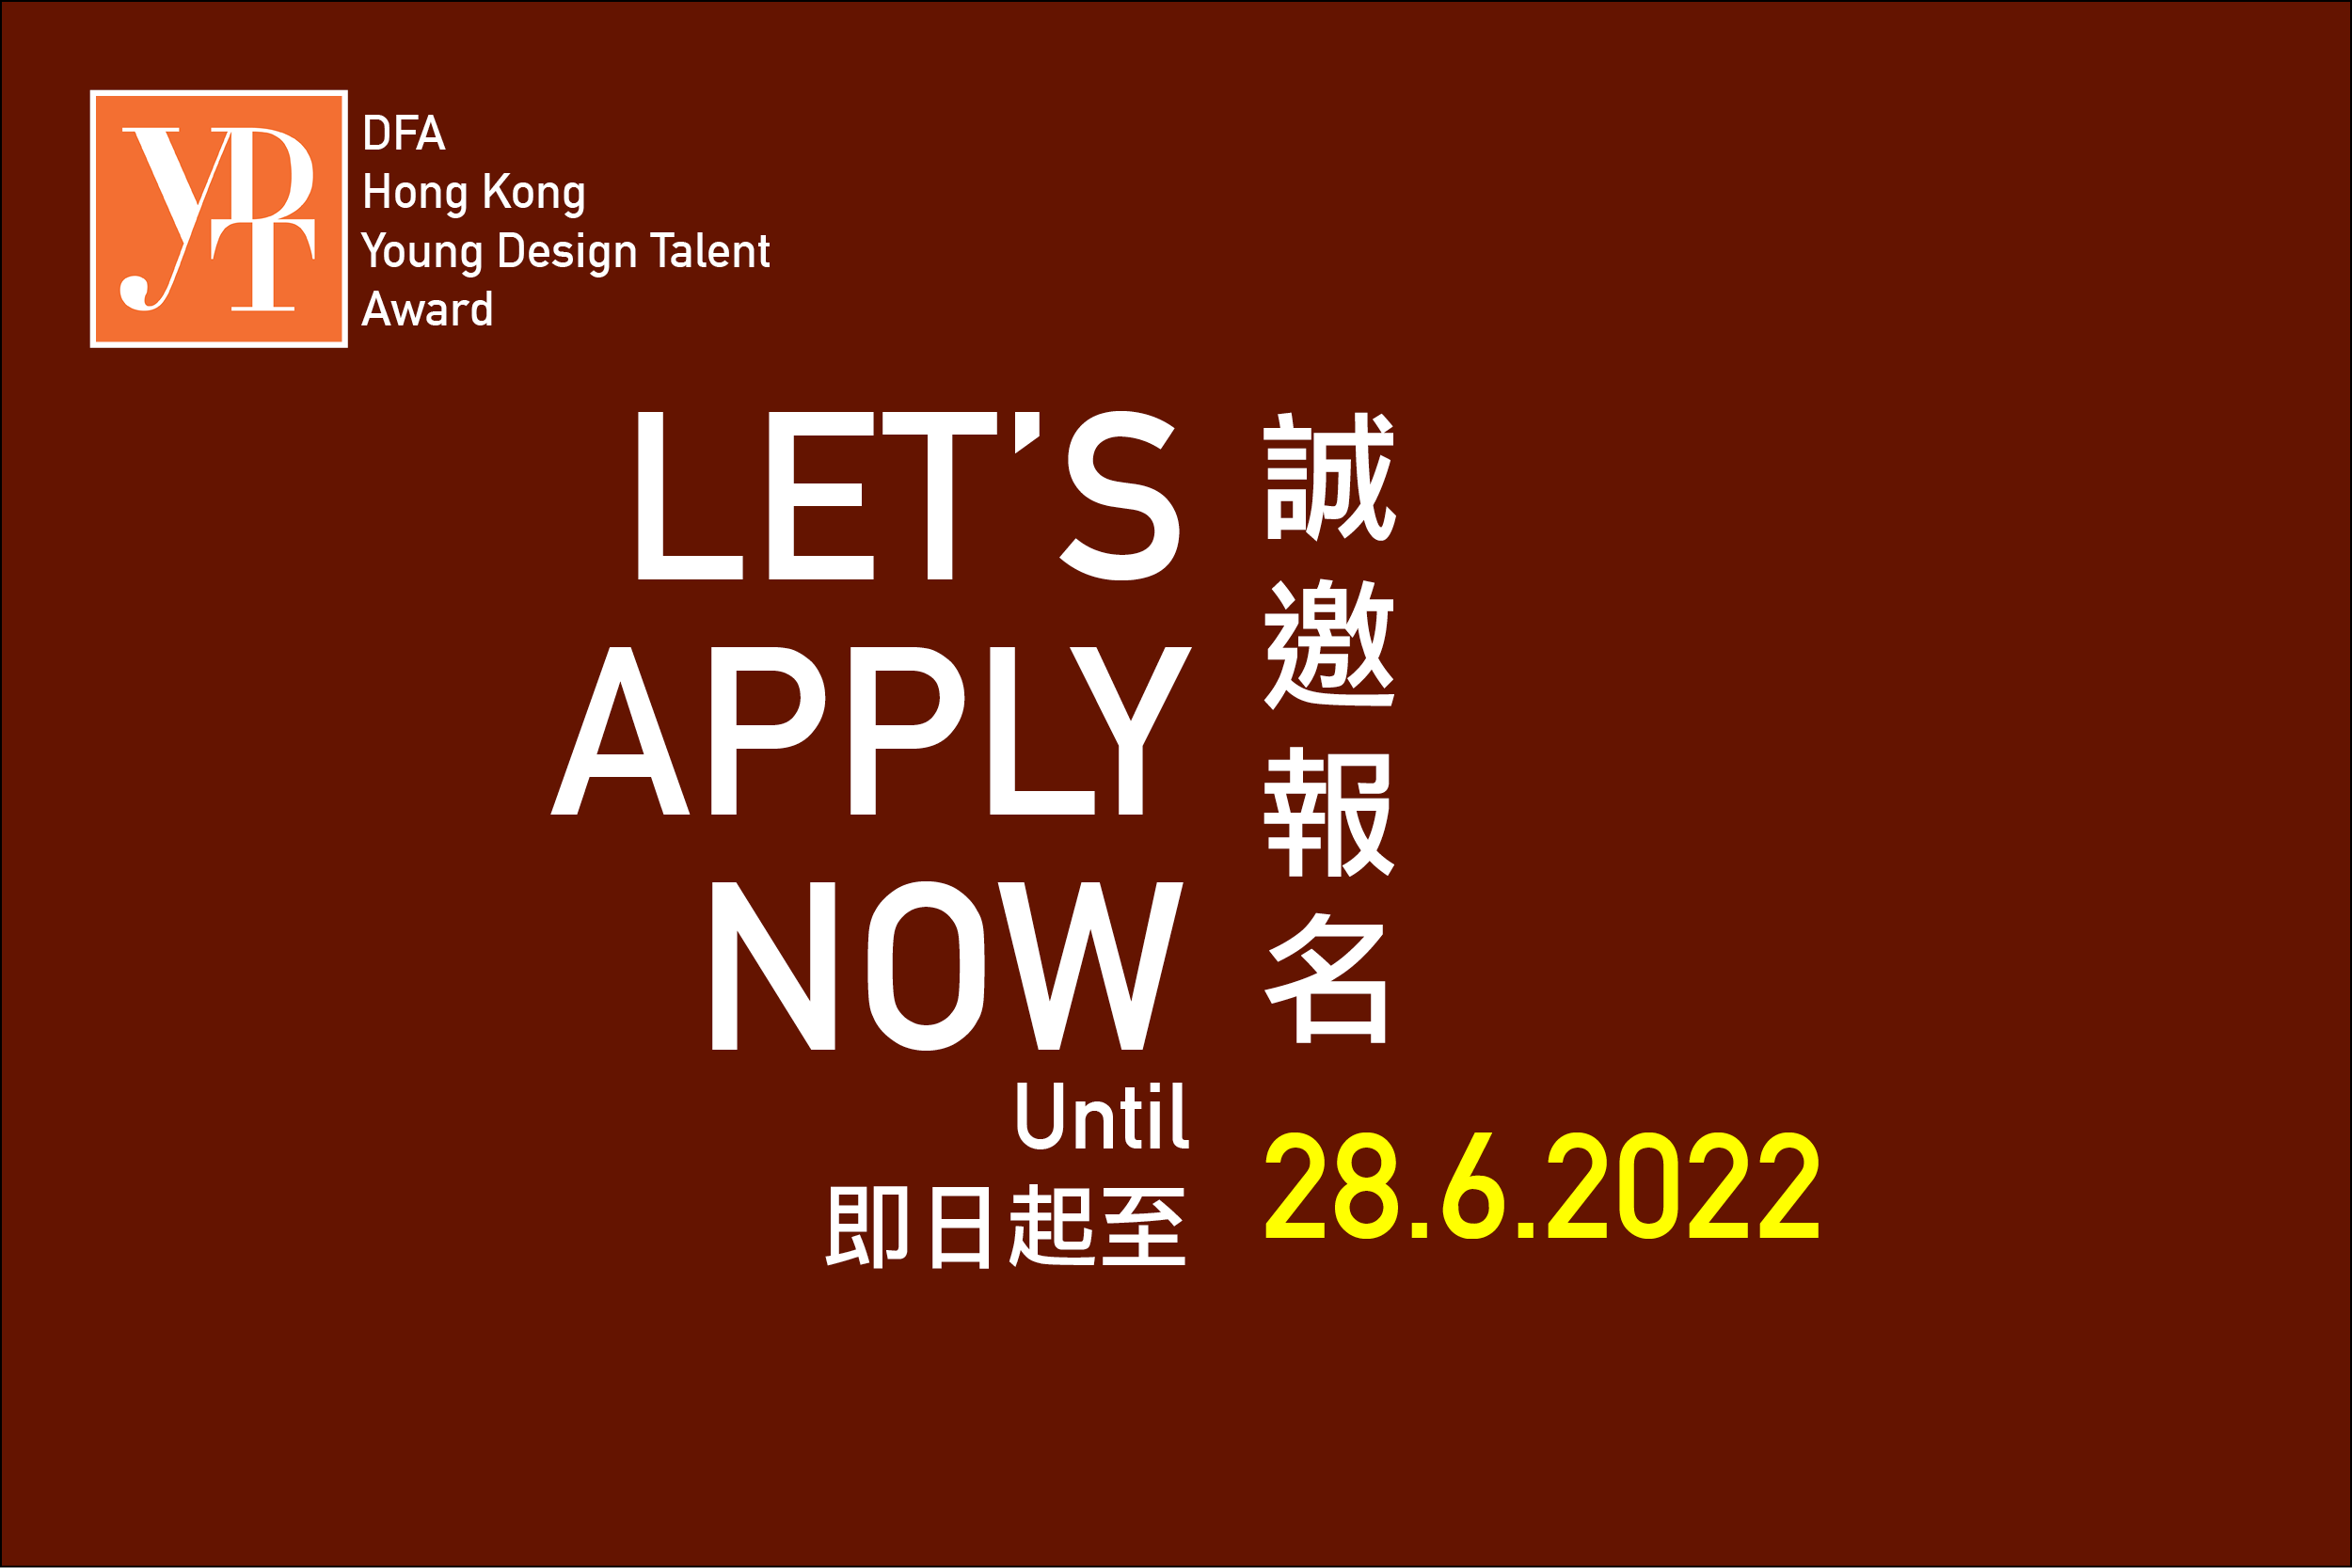 DFA 香港青年設計才俊獎 2022 現正接受報名至 6 月 28 日